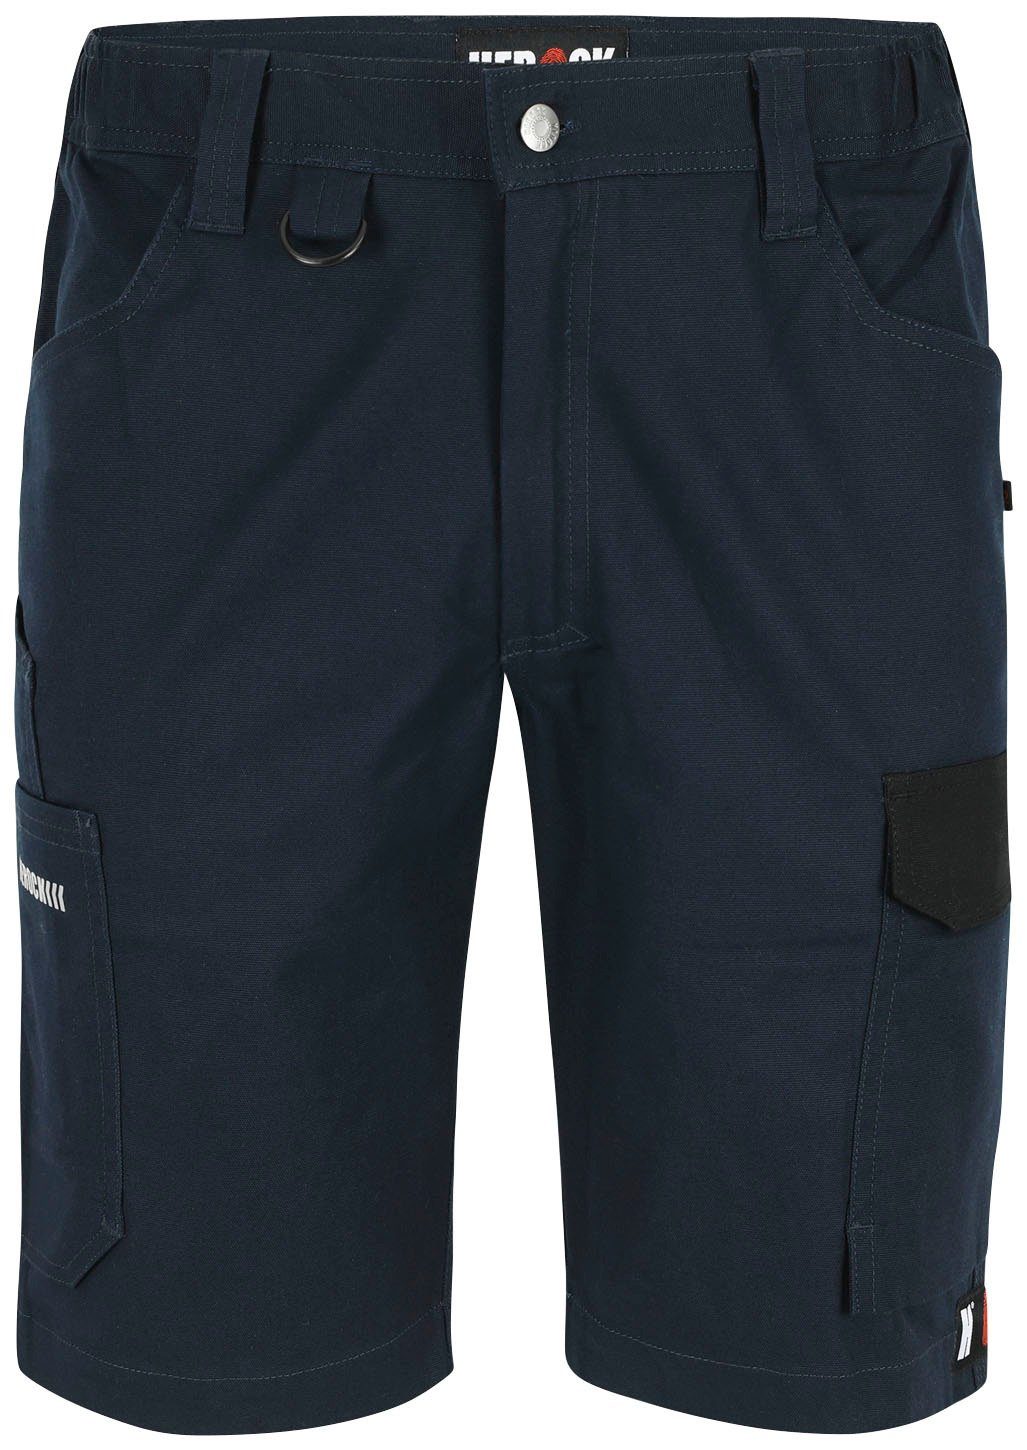 Herock Shorts Bargo Multi-Pocket, mit 2-Wege-Stretch-Einsatz, verschiedene Farben marineblau/schwarz